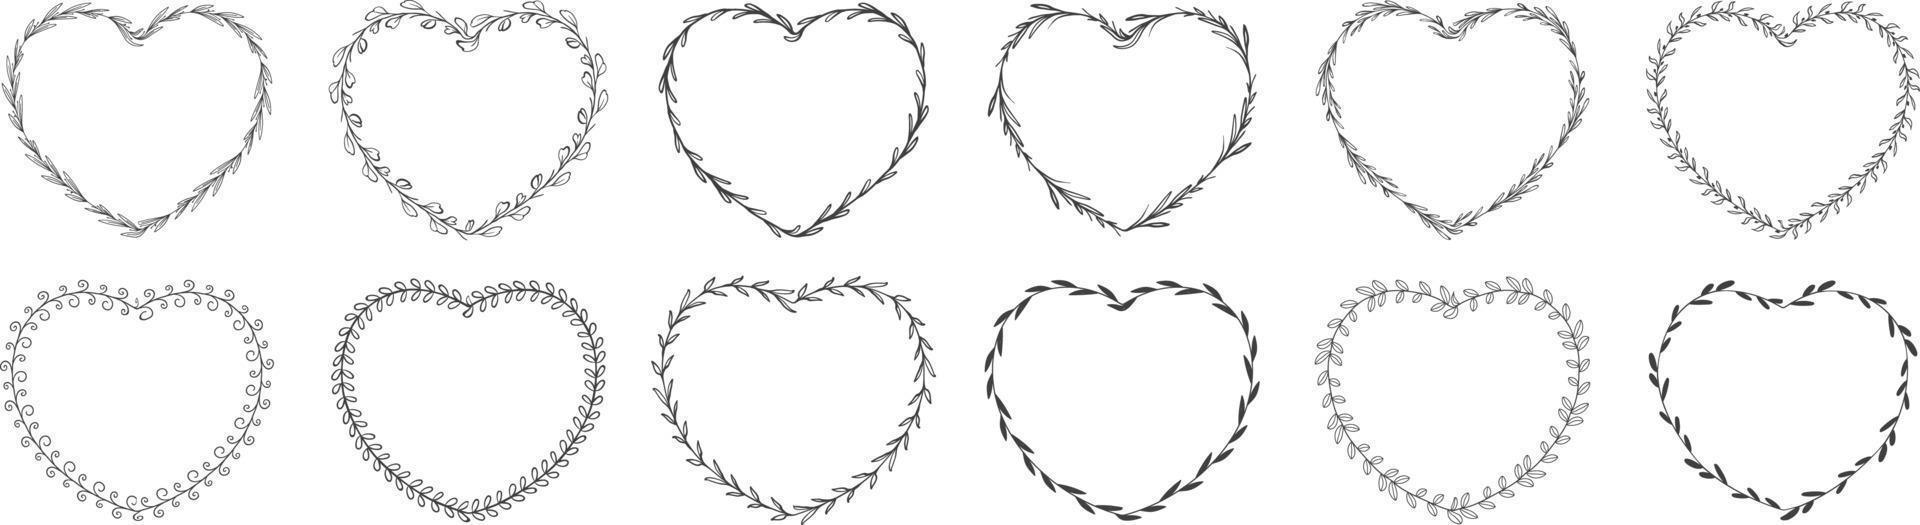 corona de hojas en forma de corazon vector